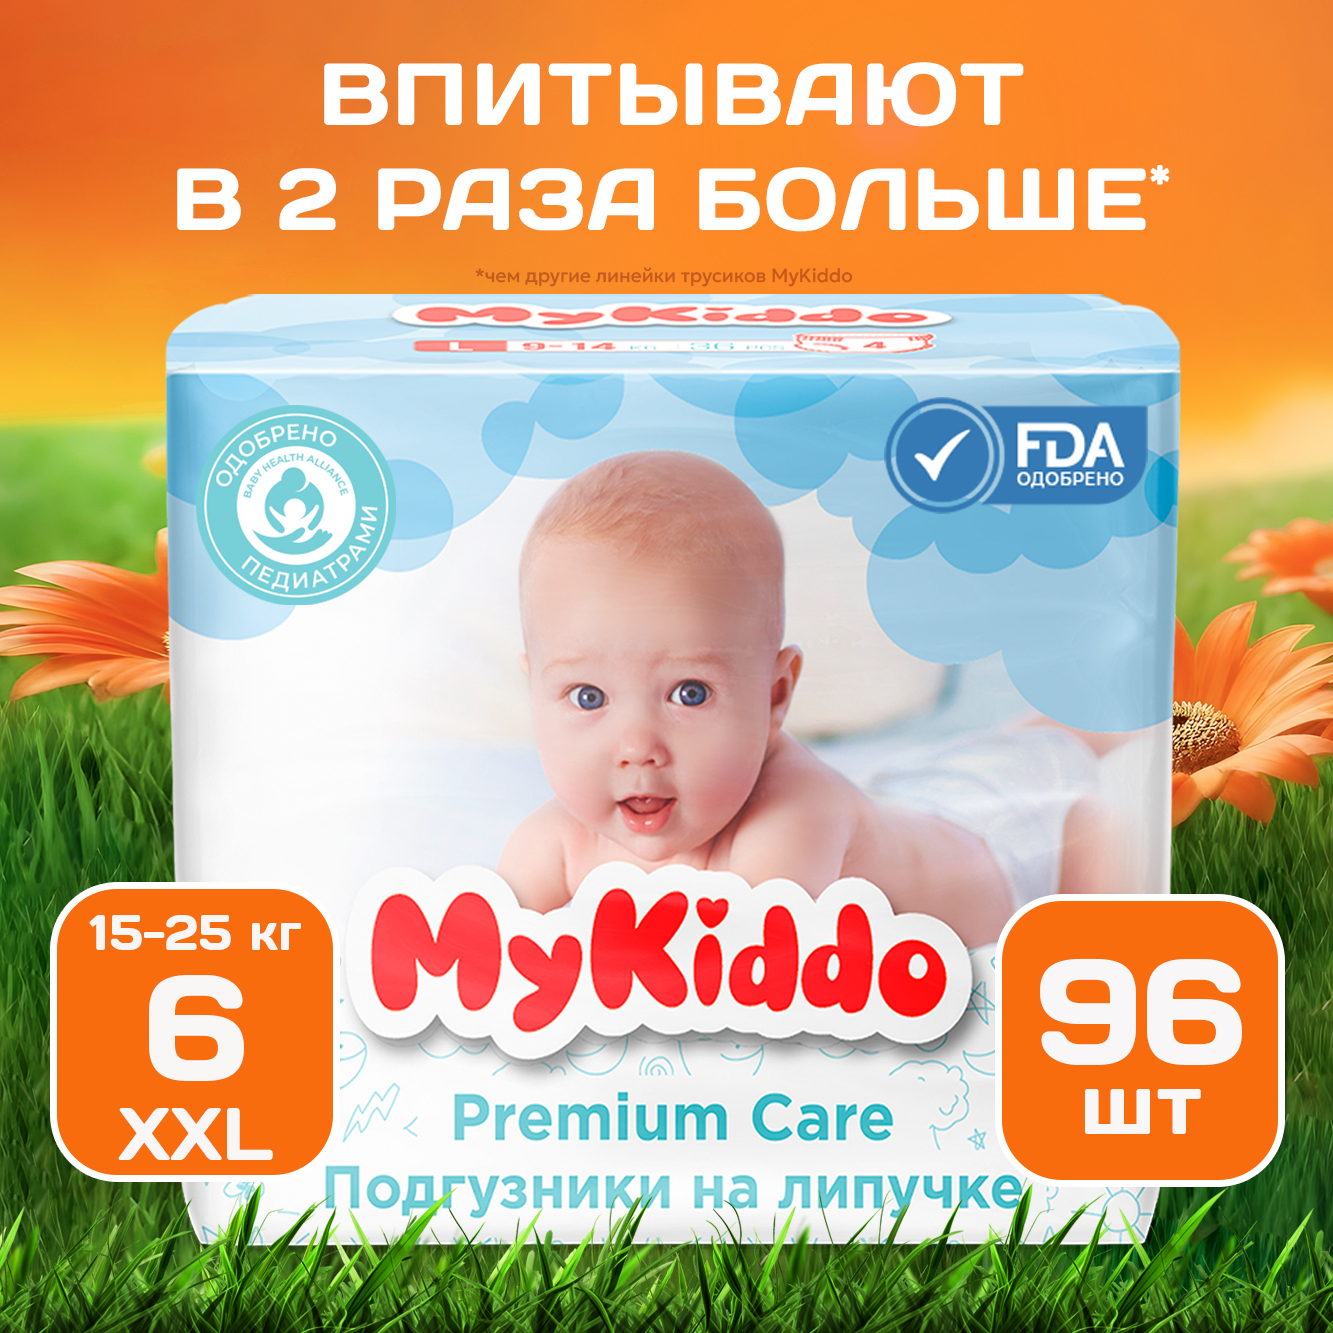 Подгузники-трусики для детей MyKiddo Premium XXL (15-25 кг) 96 шт. 3 уп. x 32 шт. подгузники трусики mykiddo premium xxl 15 22 кг 32 шт m20532